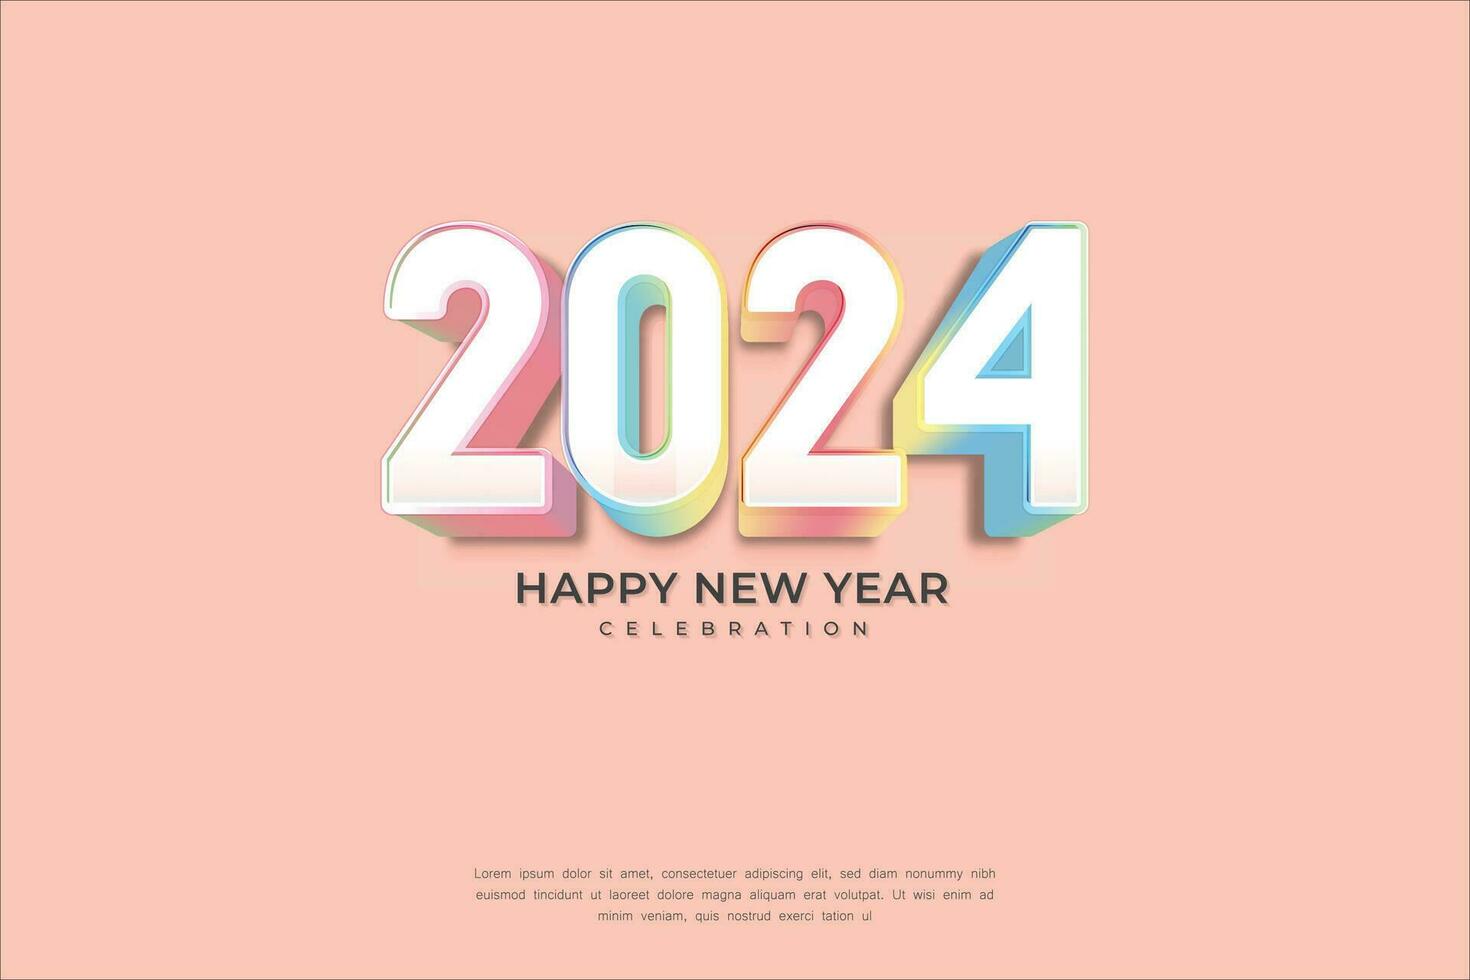 contento nuevo año 2024 3d cinematográfico arco iris resplandor texto para bandera o póster vector